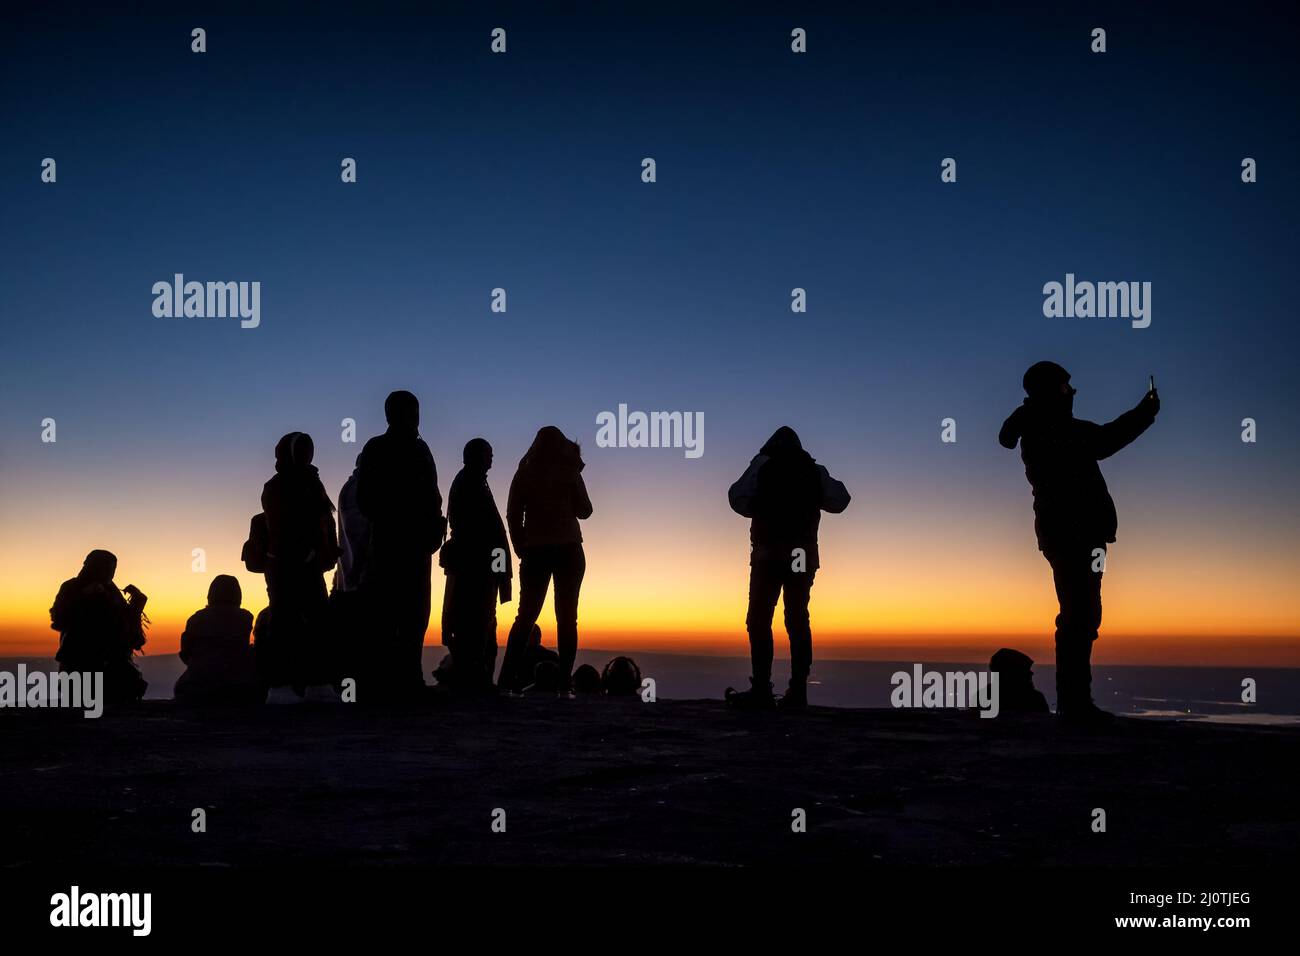 Silueta de personas no identificadas en la cima de la montaña esperando el amanecer Foto de stock